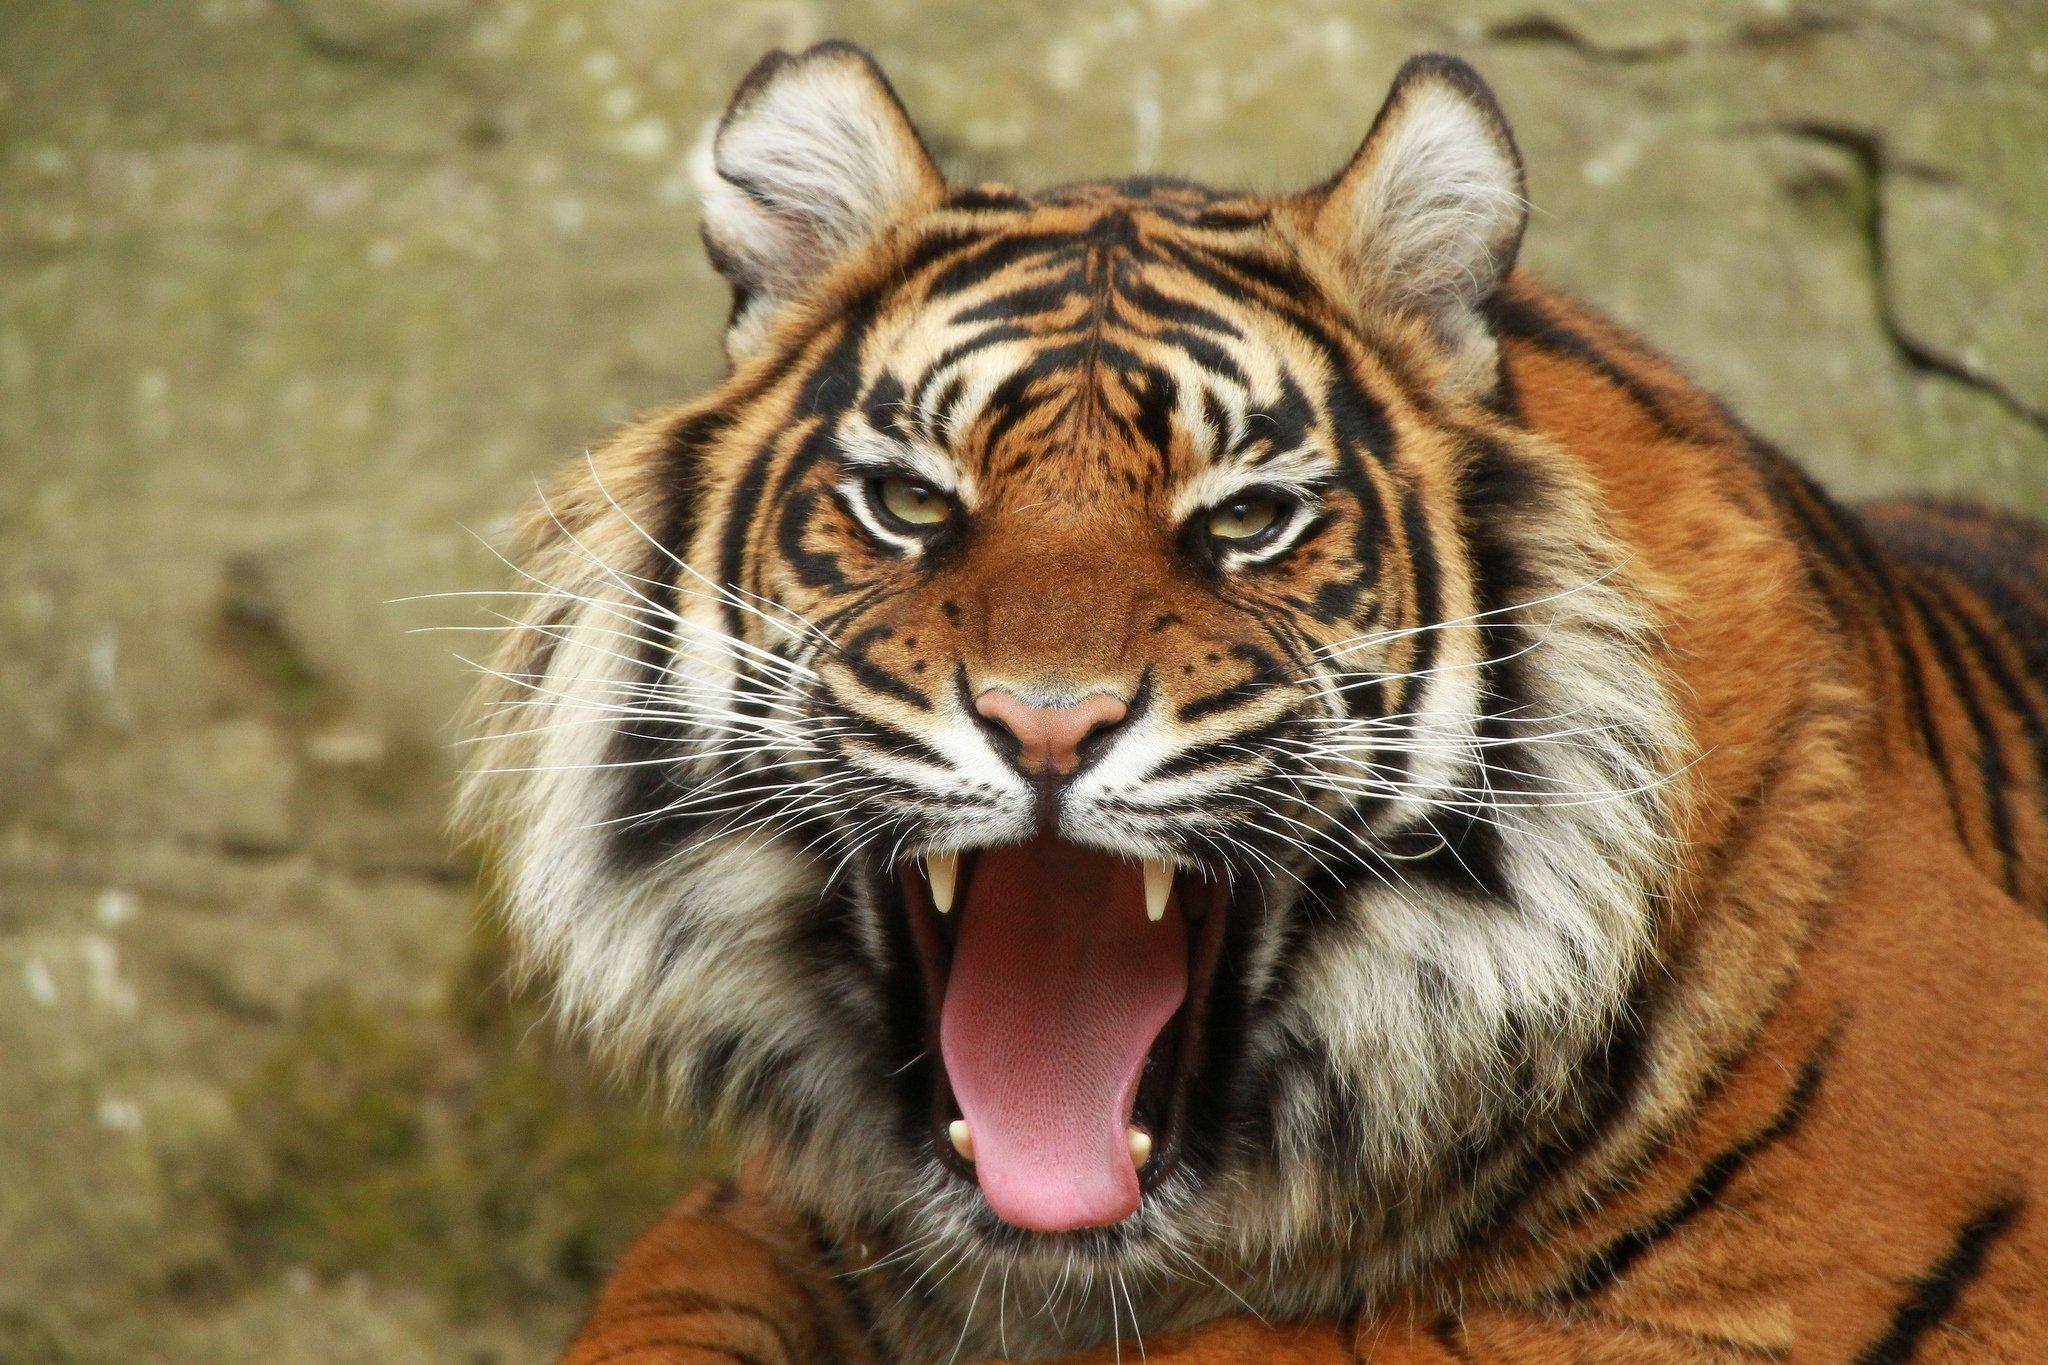 big, Cats, Tiger, Roar, Animals Wallpaper HD / Desktop and Mobile